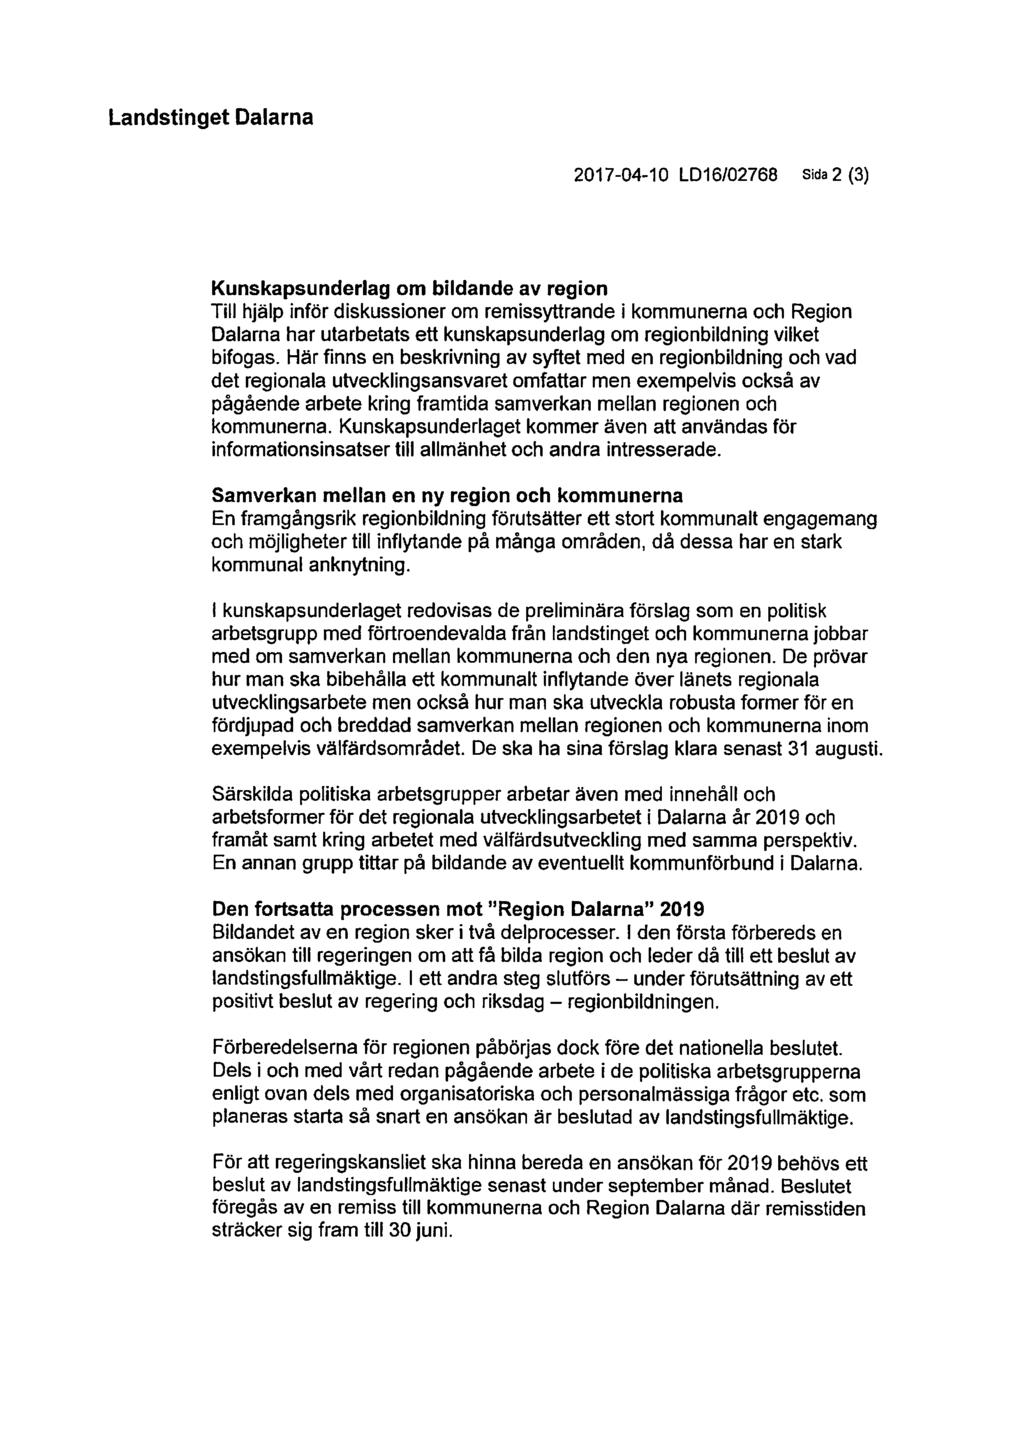 Landstinget Dalarna 2017-04-10 LD16/02768 Sida 2 (3) Kunskapsunderlag om bildande av region Till hjälp inför diskussioner om remissyttrande i kommunerna och Region Dalarna har utarbetats ett